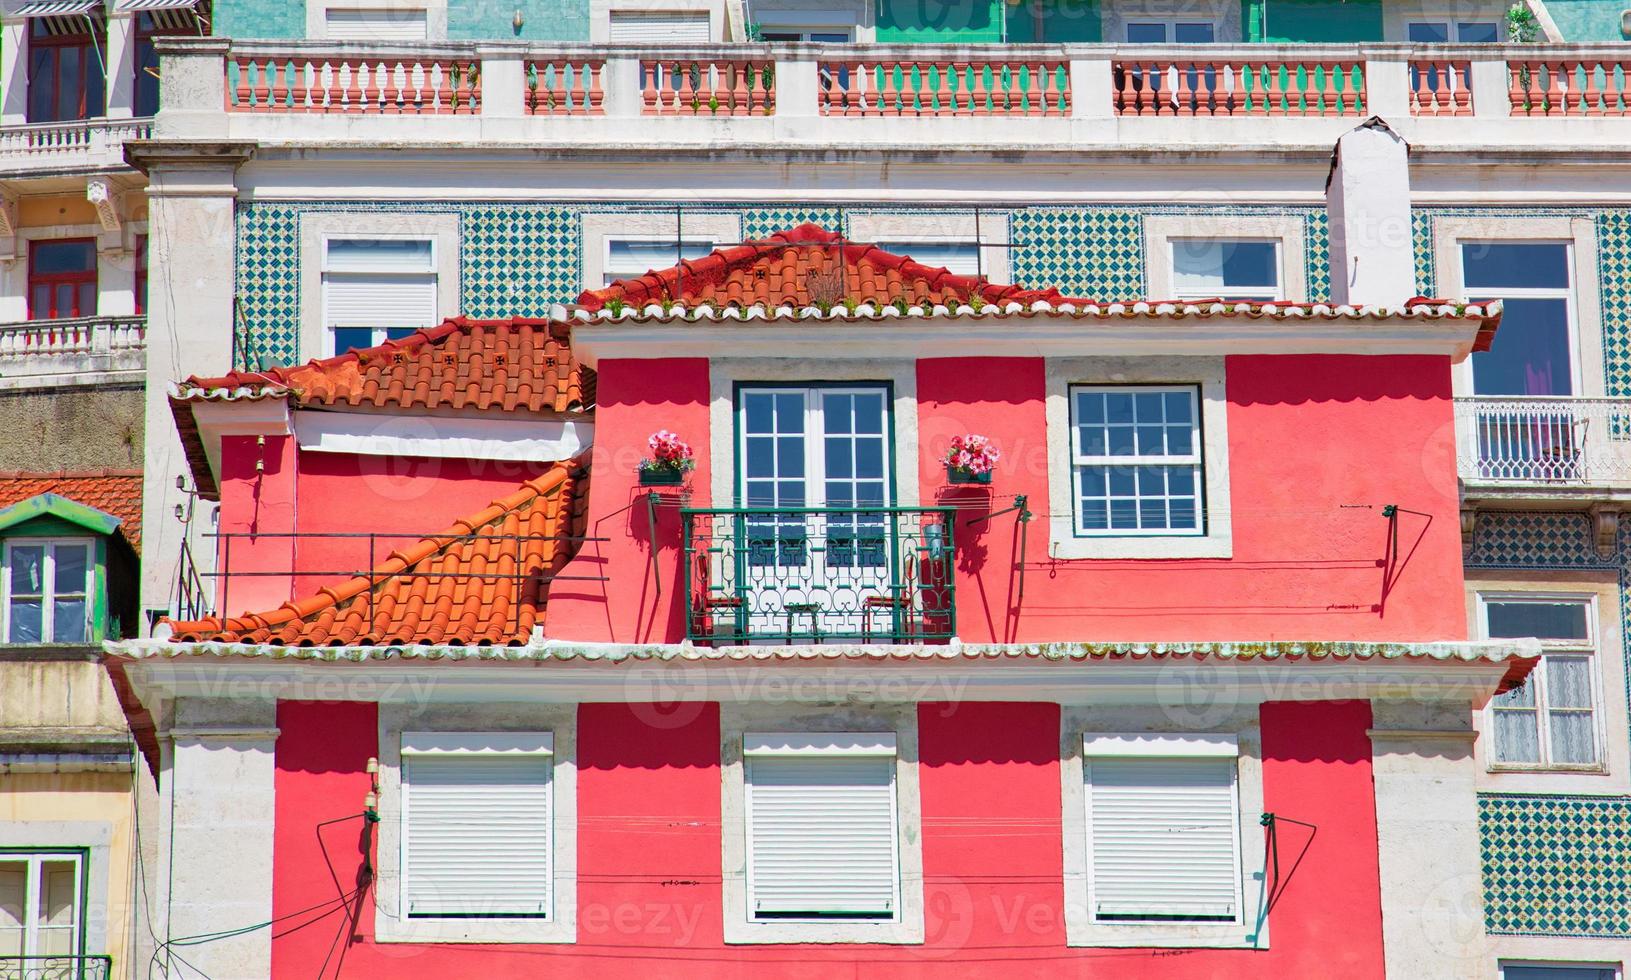 typische architektur und farbenfrohe gebäude des historischen zentrums von lissabon foto